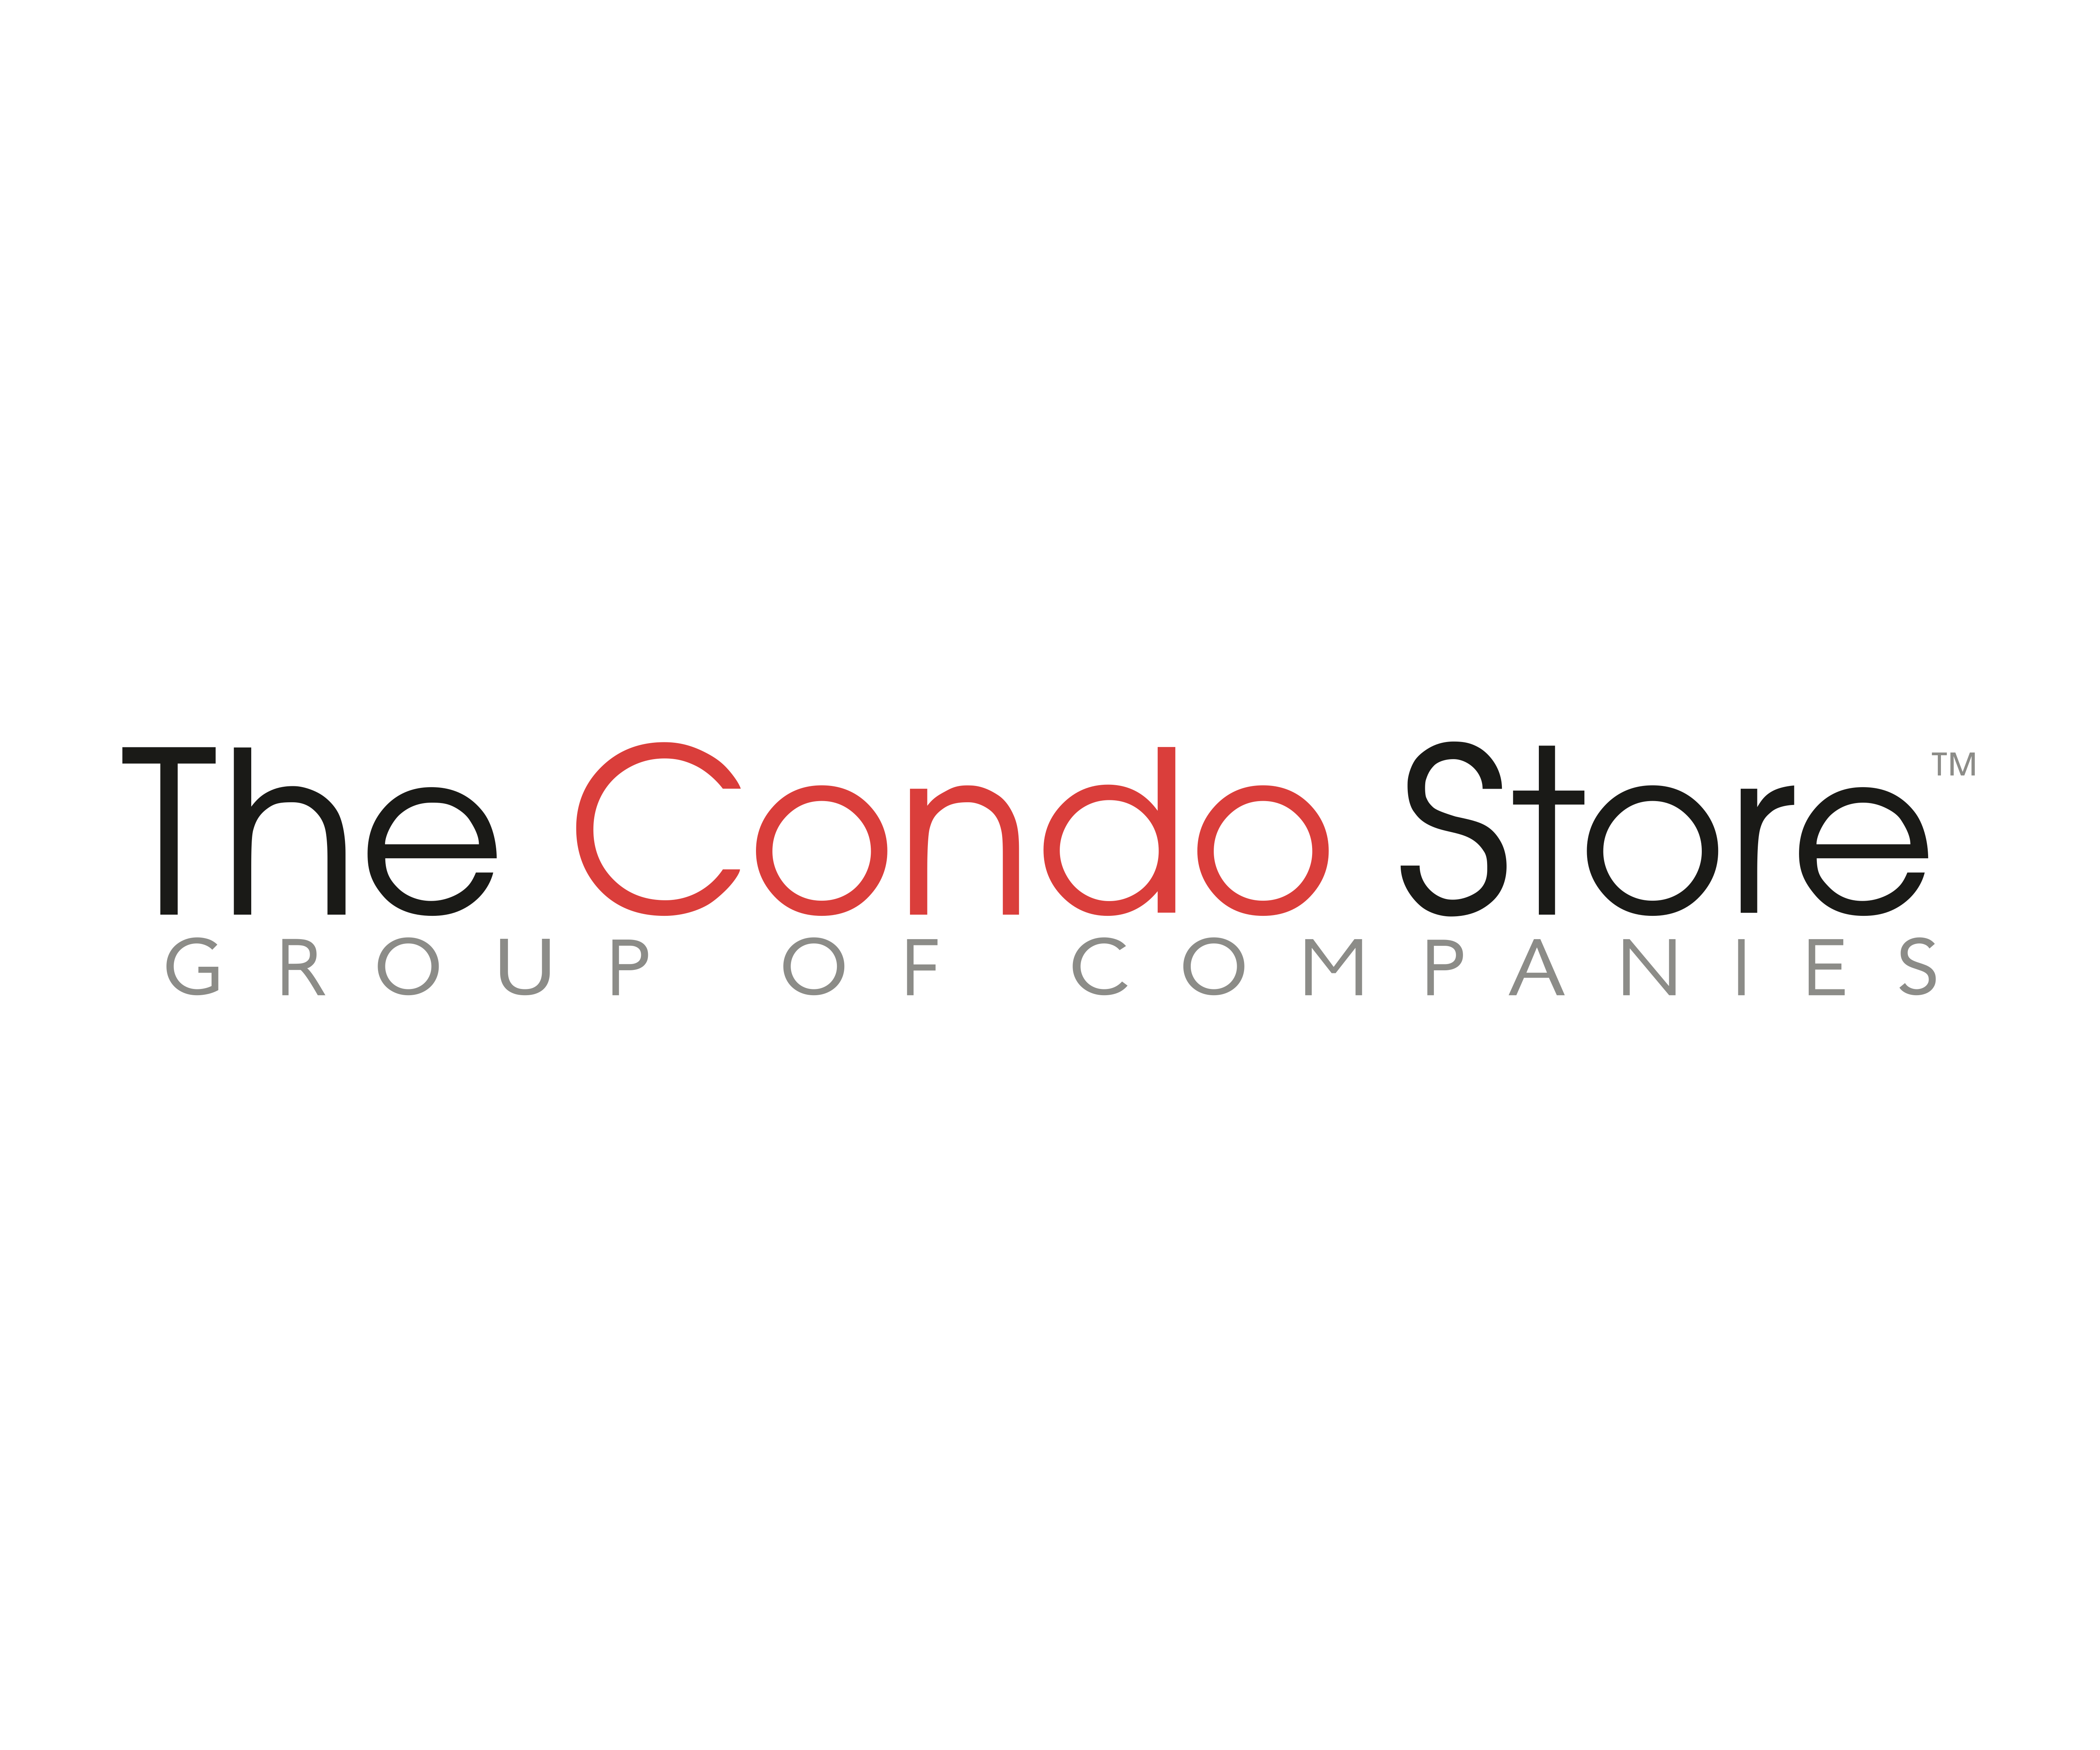 The Condo Store